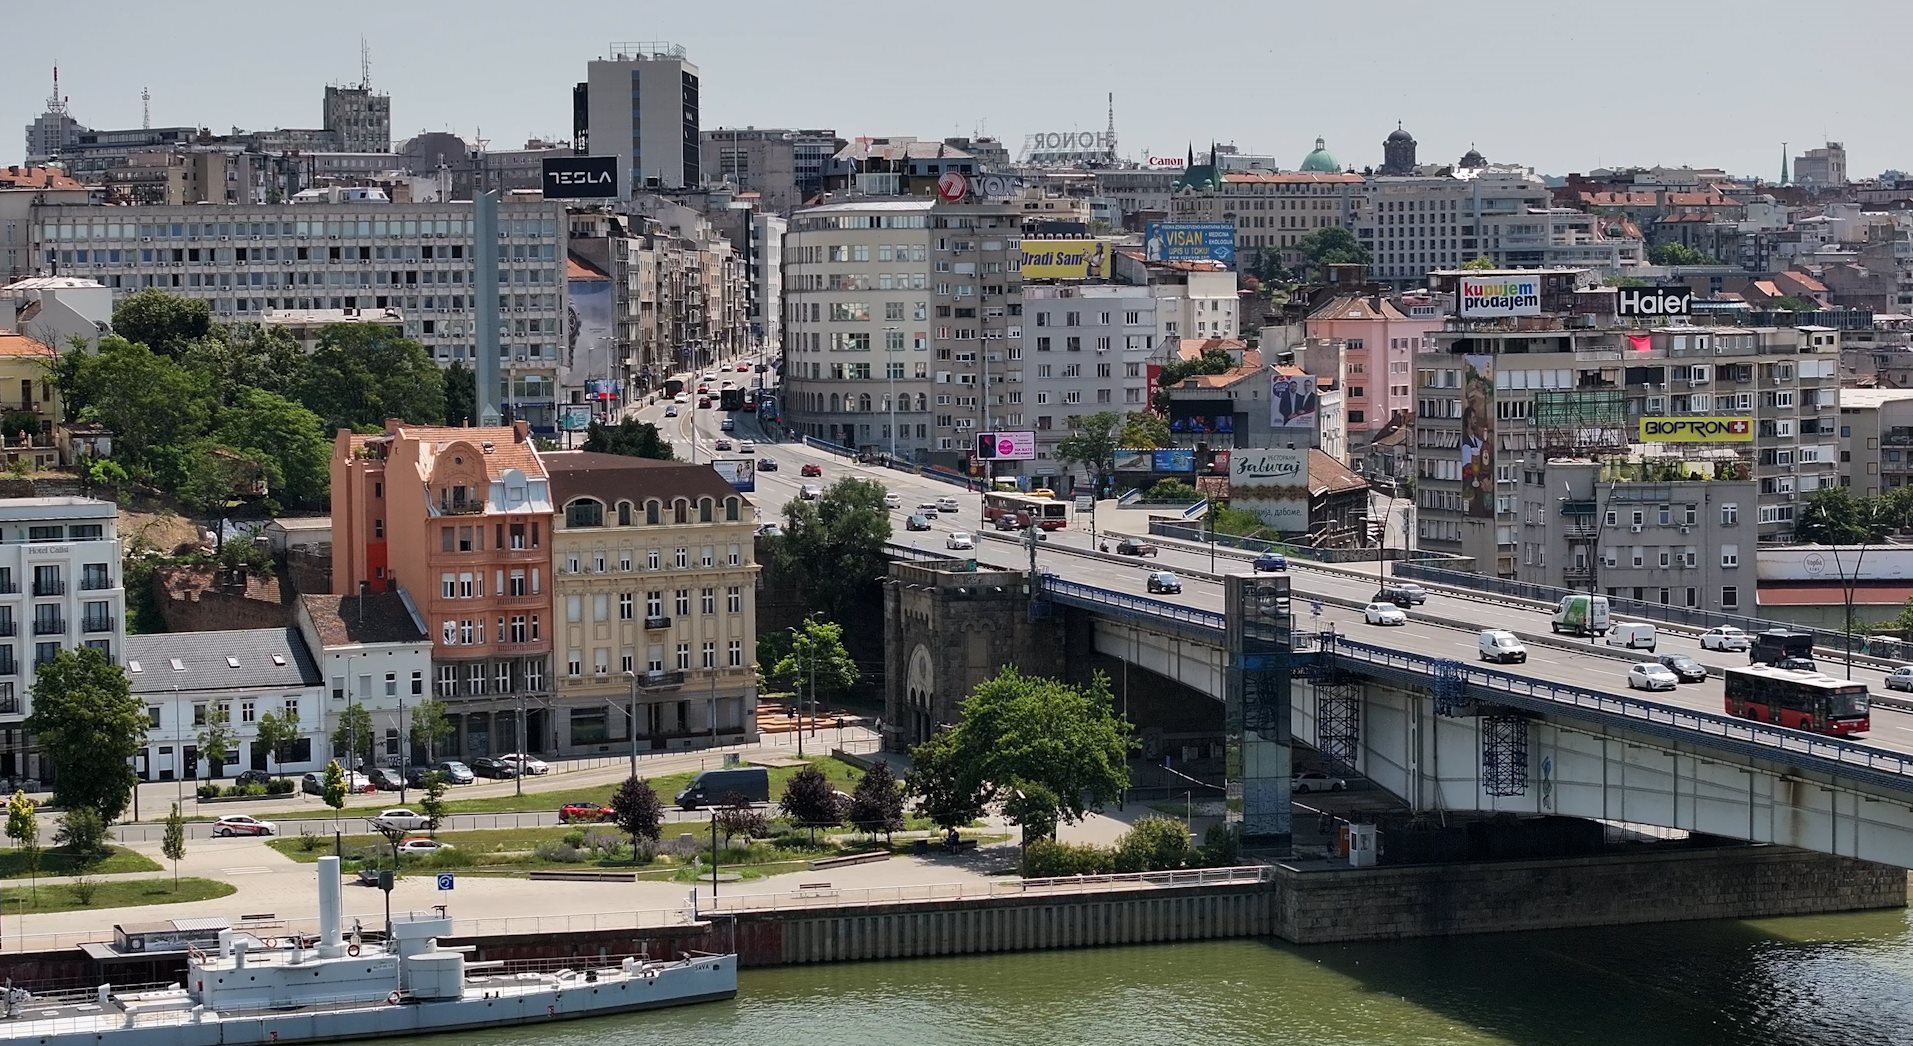 Specijali_Simboli Beograda_Brankov most1.jpg